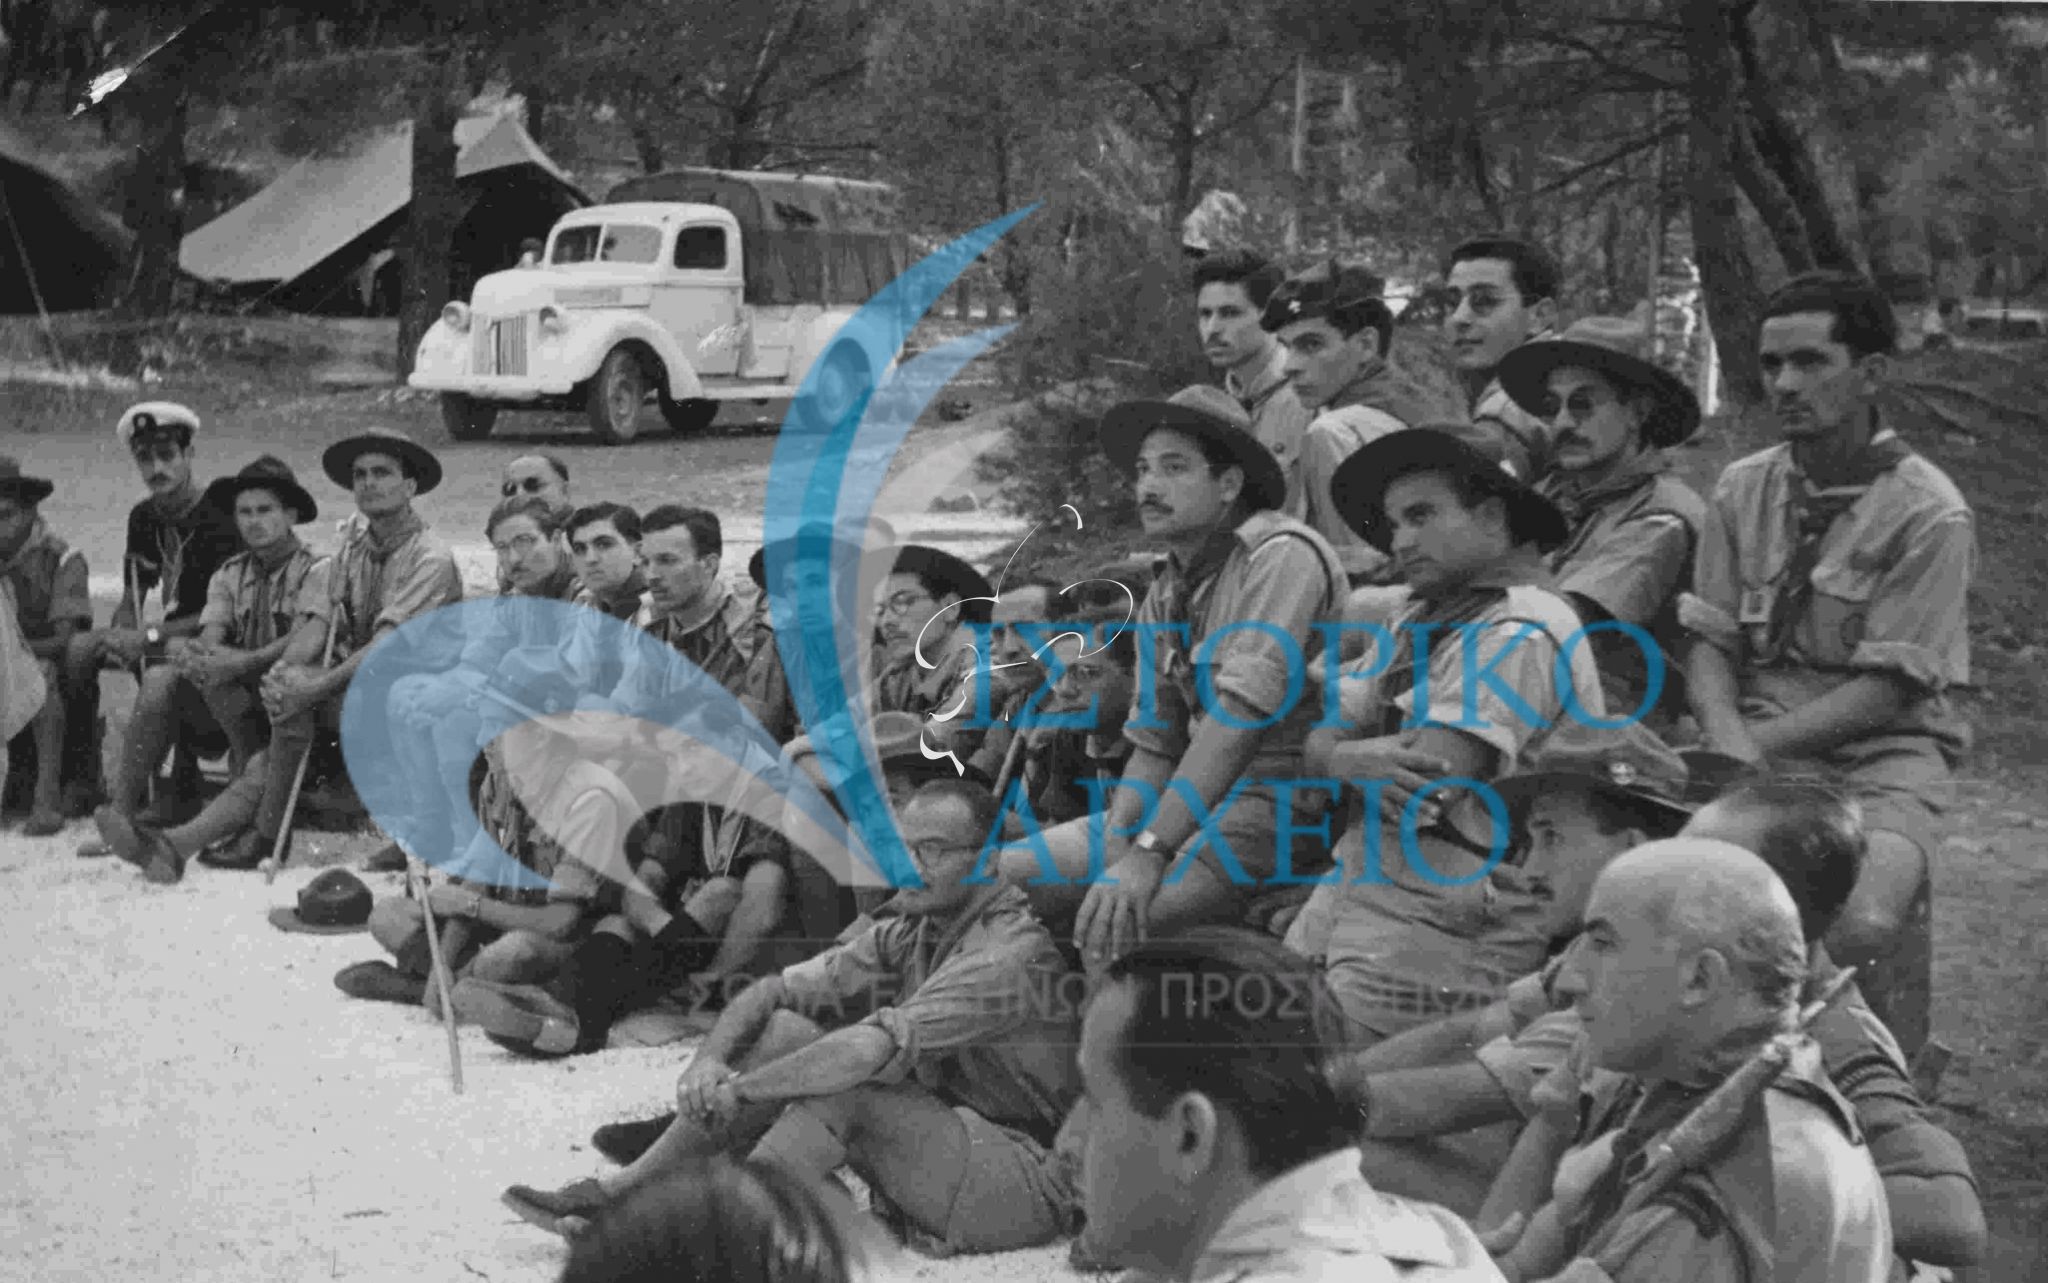 Βαθμοφόροι σε συνάντηση συντονισμού στο Τζάμπορη του Διονύσου το 1950.